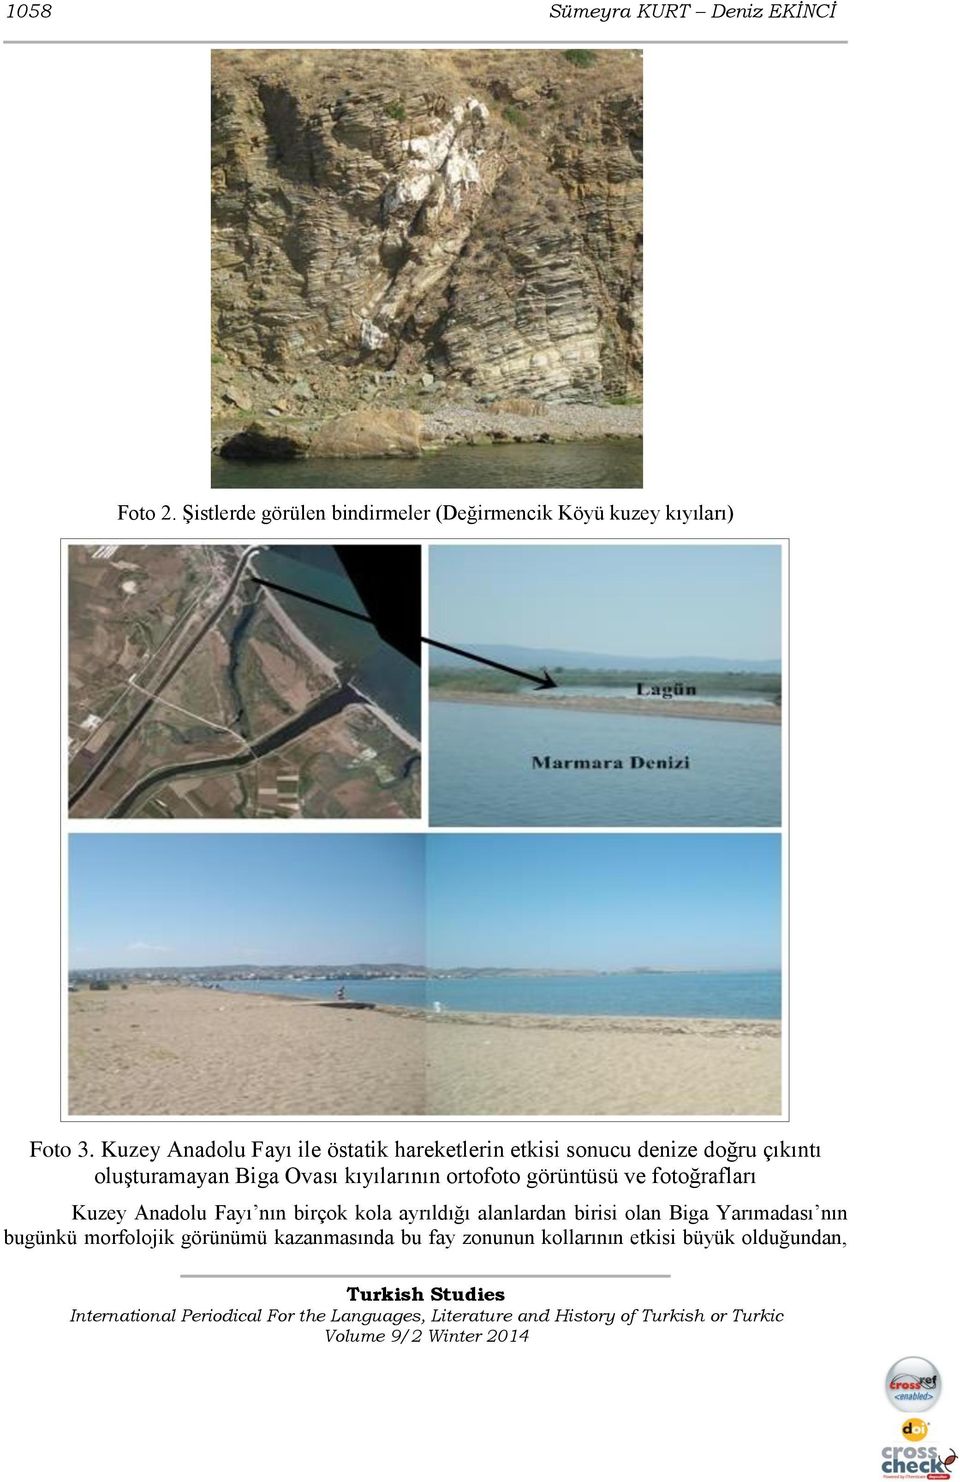 kıyılarının ortofoto görüntüsü ve fotoğrafları Kuzey Anadolu Fayı nın birçok kola ayrıldığı alanlardan birisi